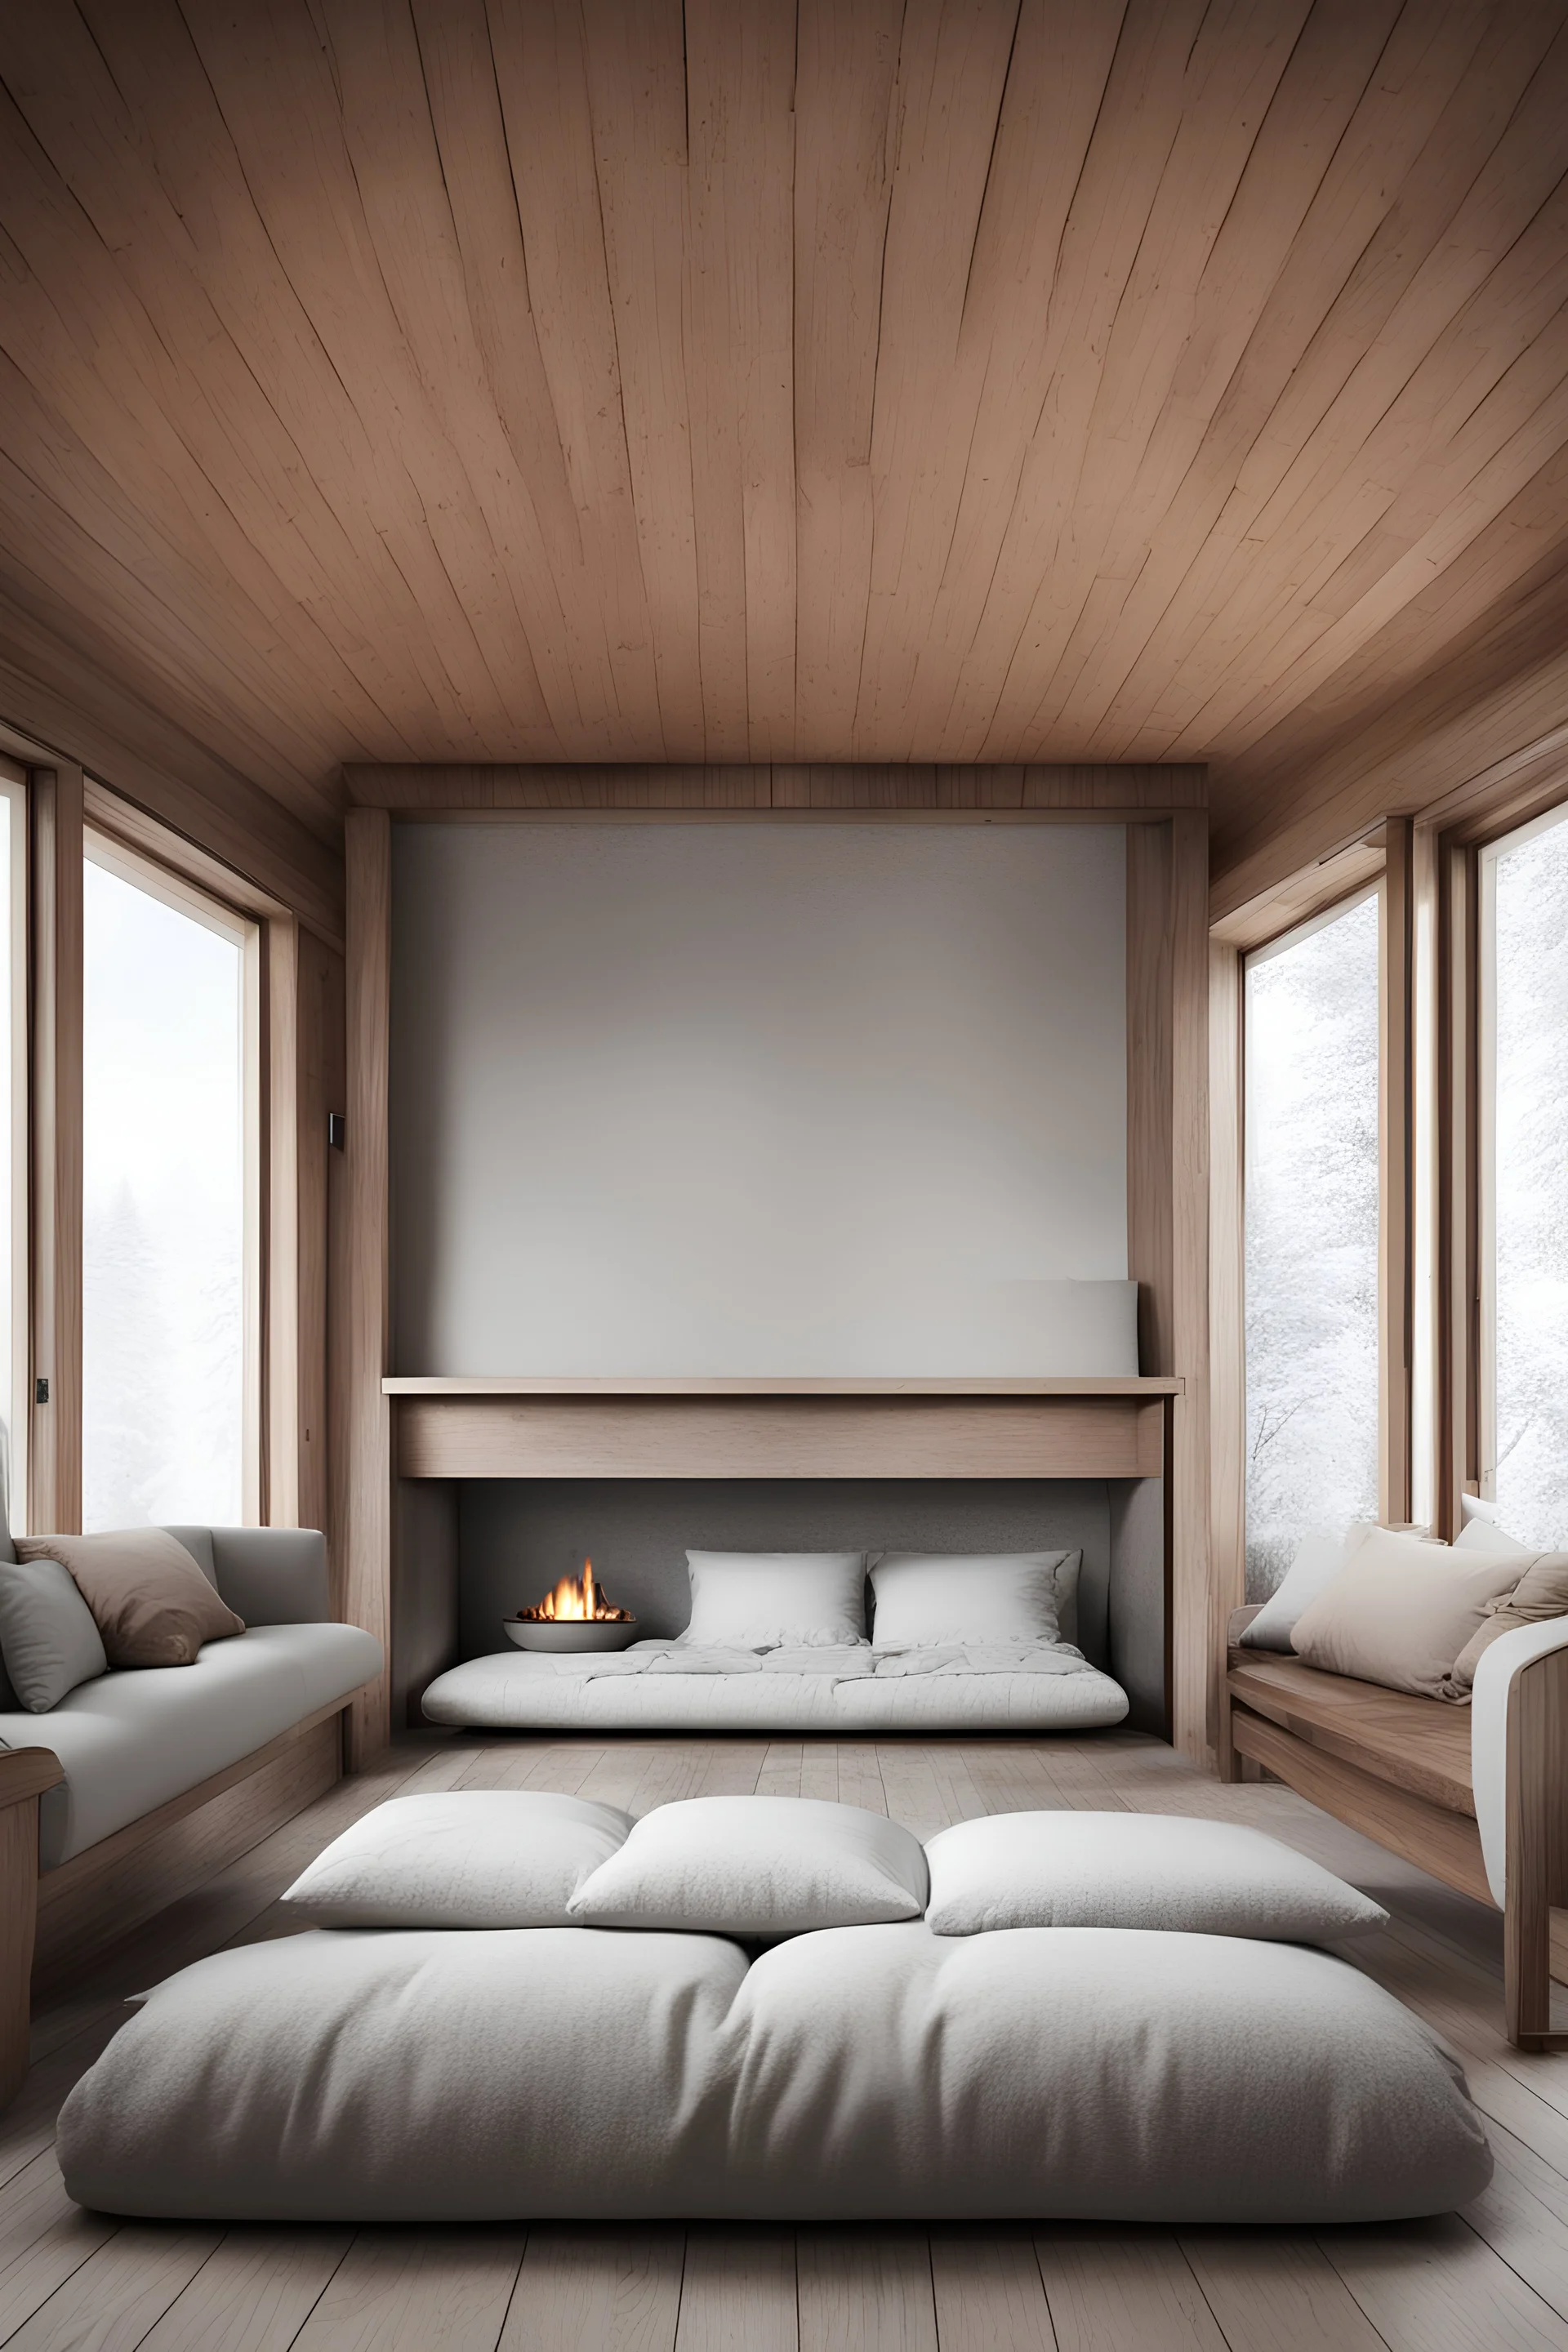 plano frontal de una habitación donde no hay muebles. solo almohadones y una cama con una chimenea y leña de madera noruega